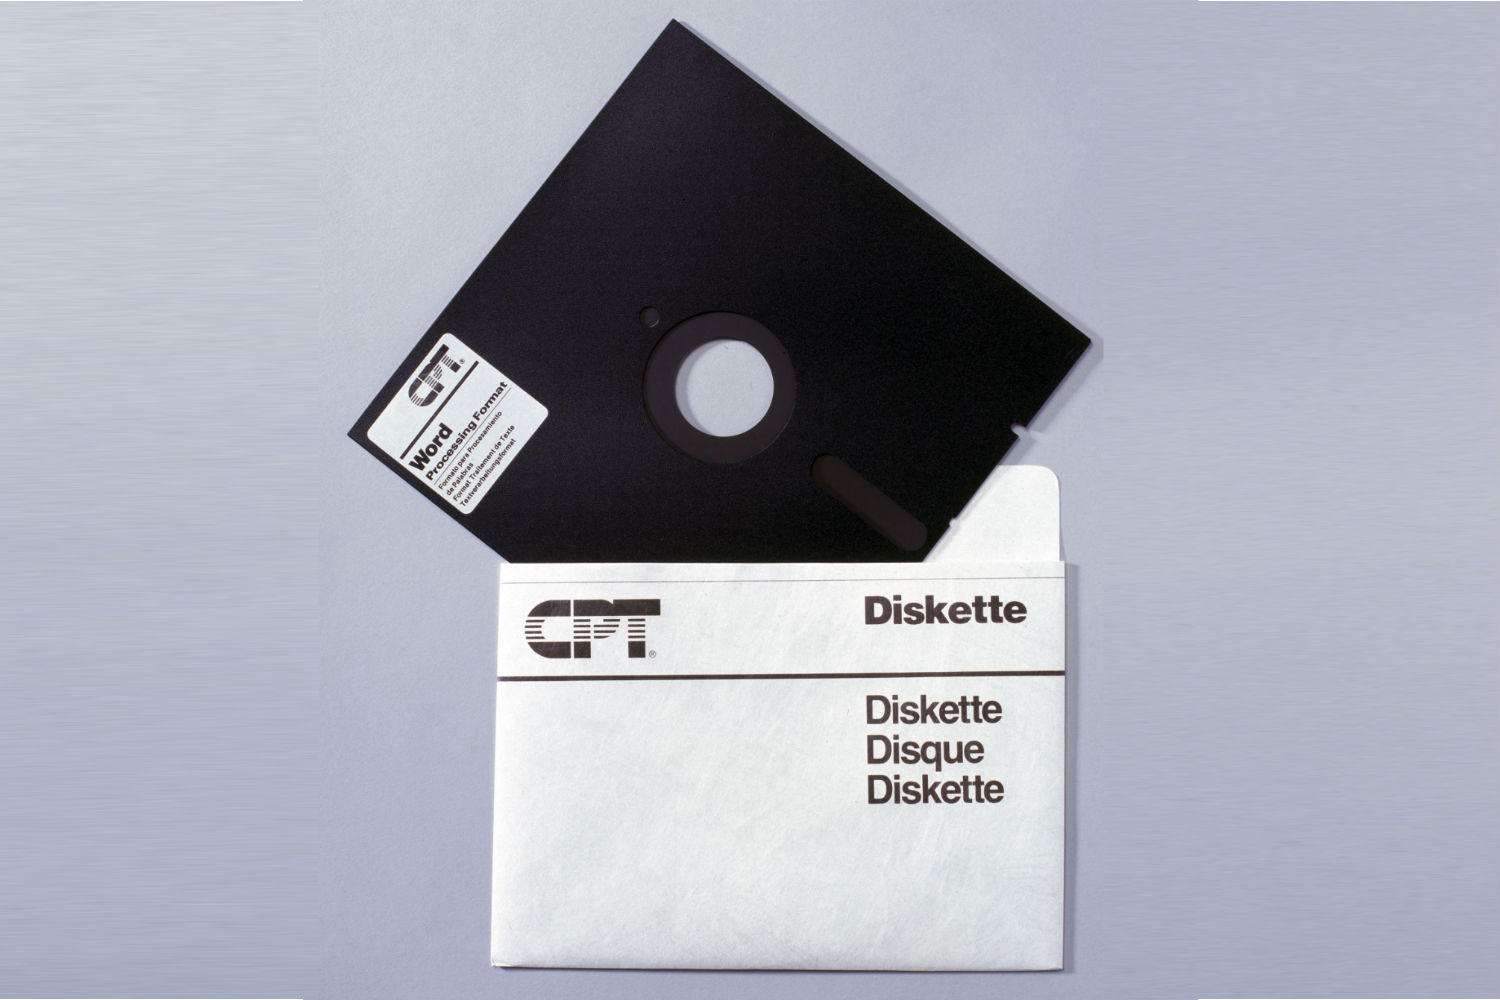 [image] Floppy disk